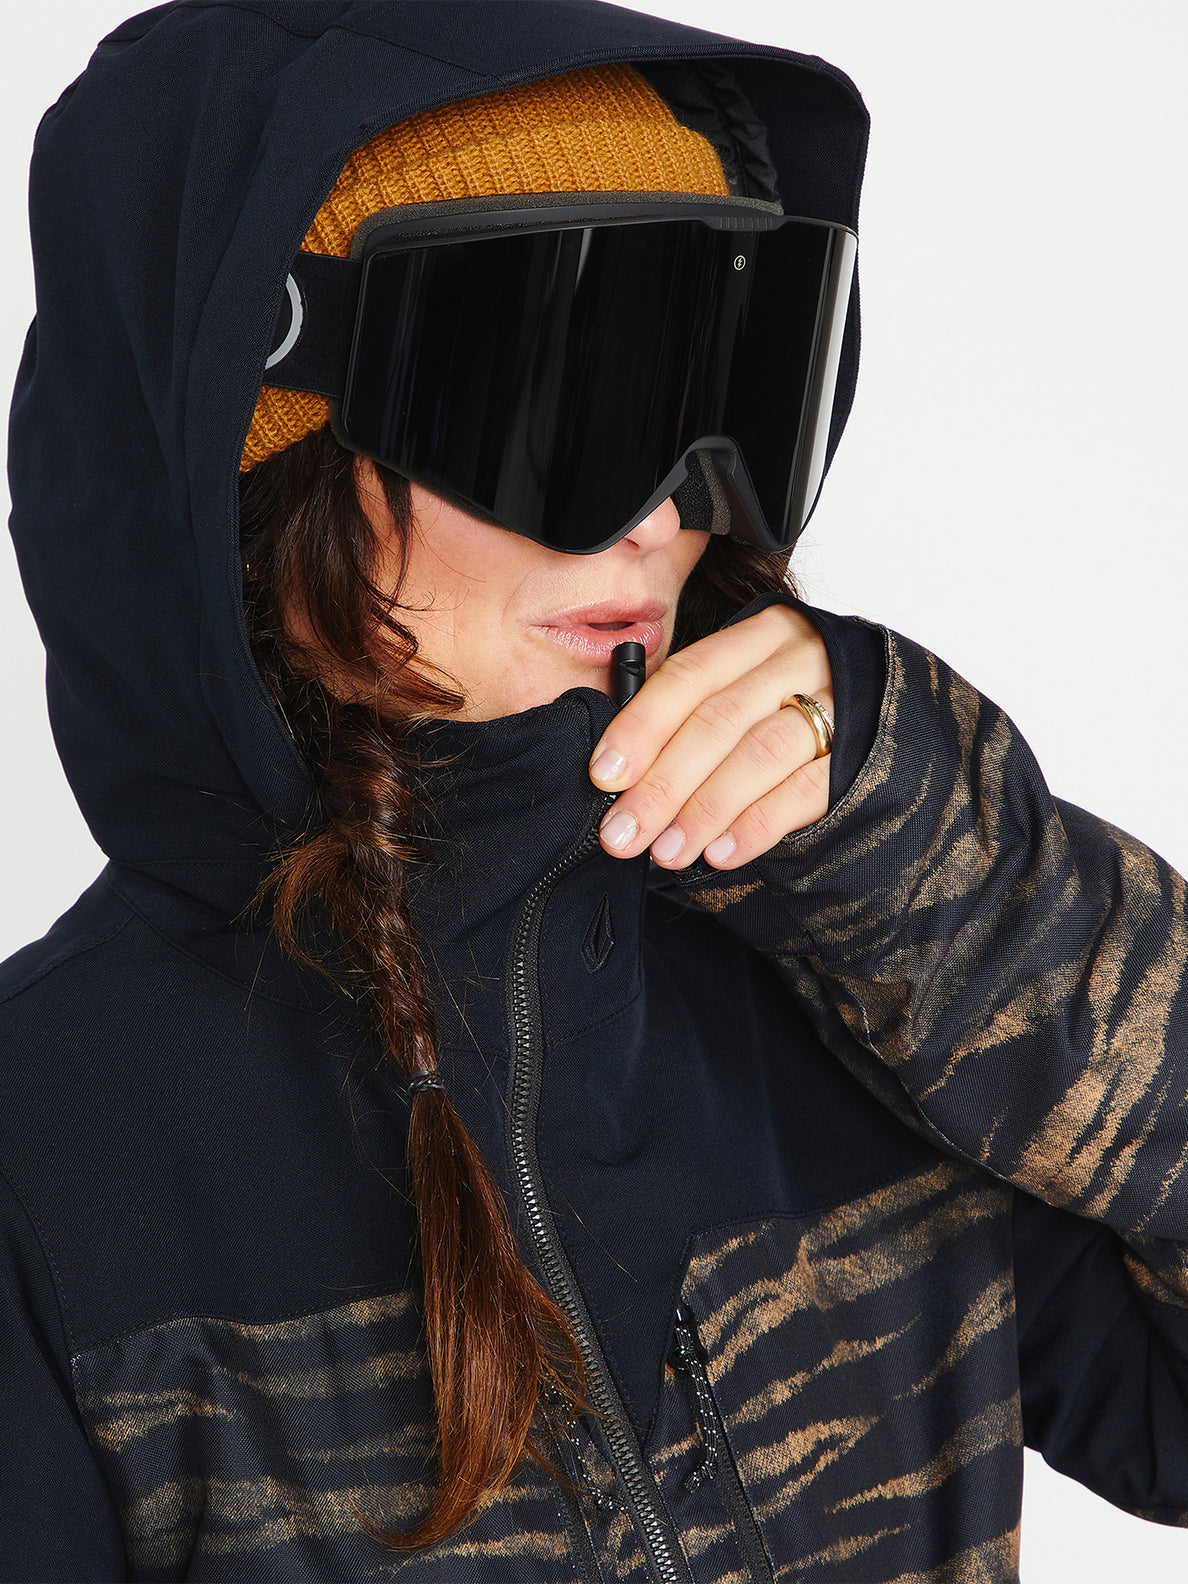 Chaqueta de snowboard Mujer Volcom Shelter 3D Stretch Jacket - Petrol Blue